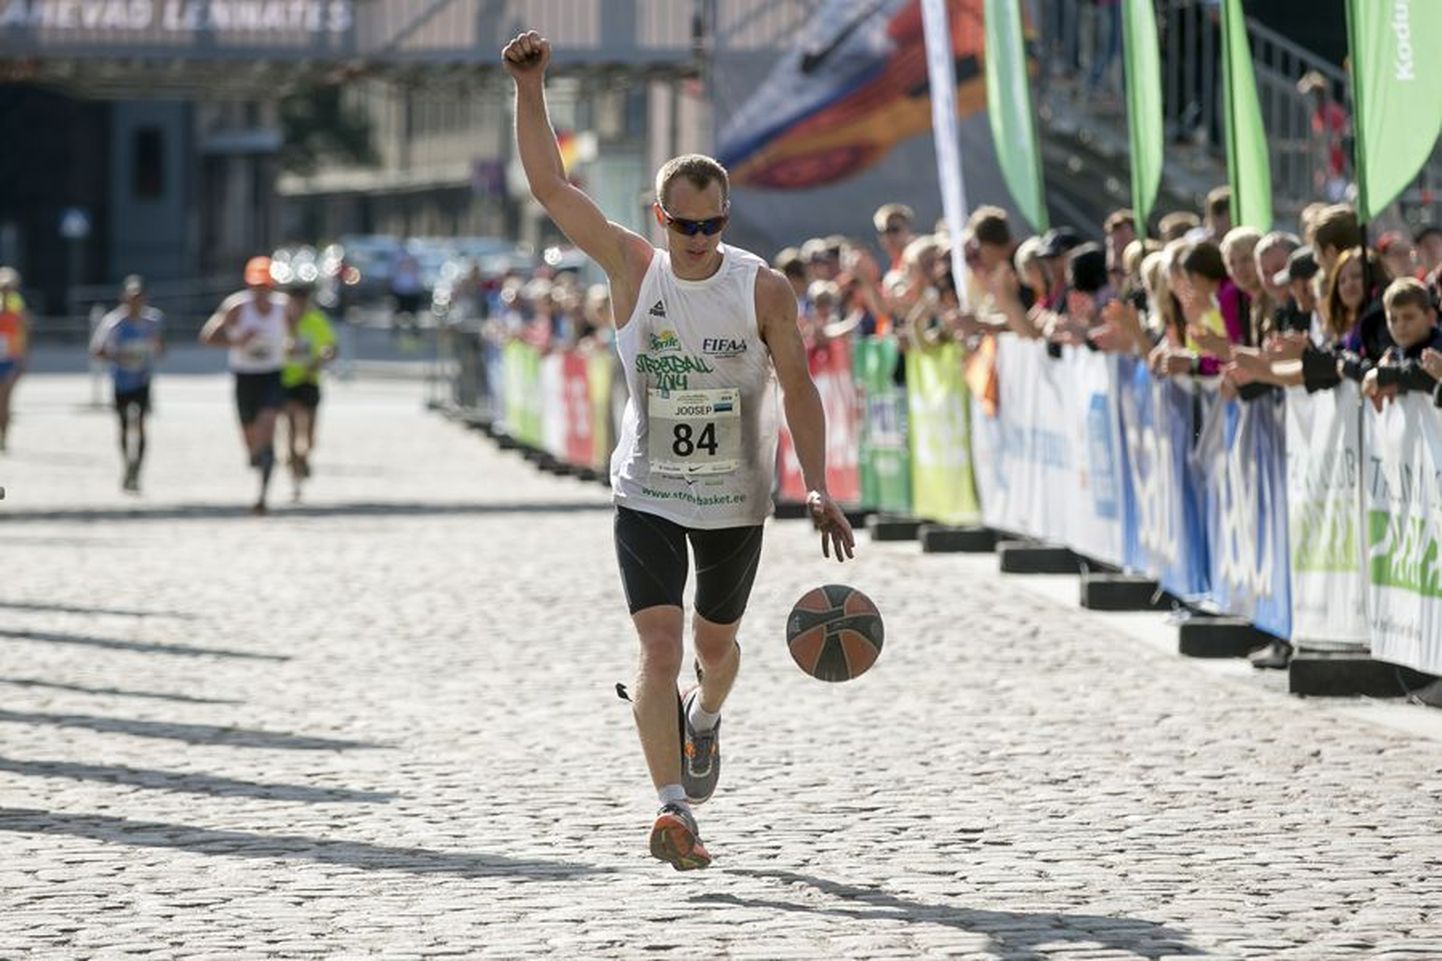 Number 84 all lõpetas pühapäeval Tallinna maratoni Joosep Mooses. Karksi-Nuiast pärit mees läbis korvpalli põrgatades 42,2 kilomeetrit ajaga 3:14.57, millega ta sai sel alal Guinnessi rekordi omanikuks.